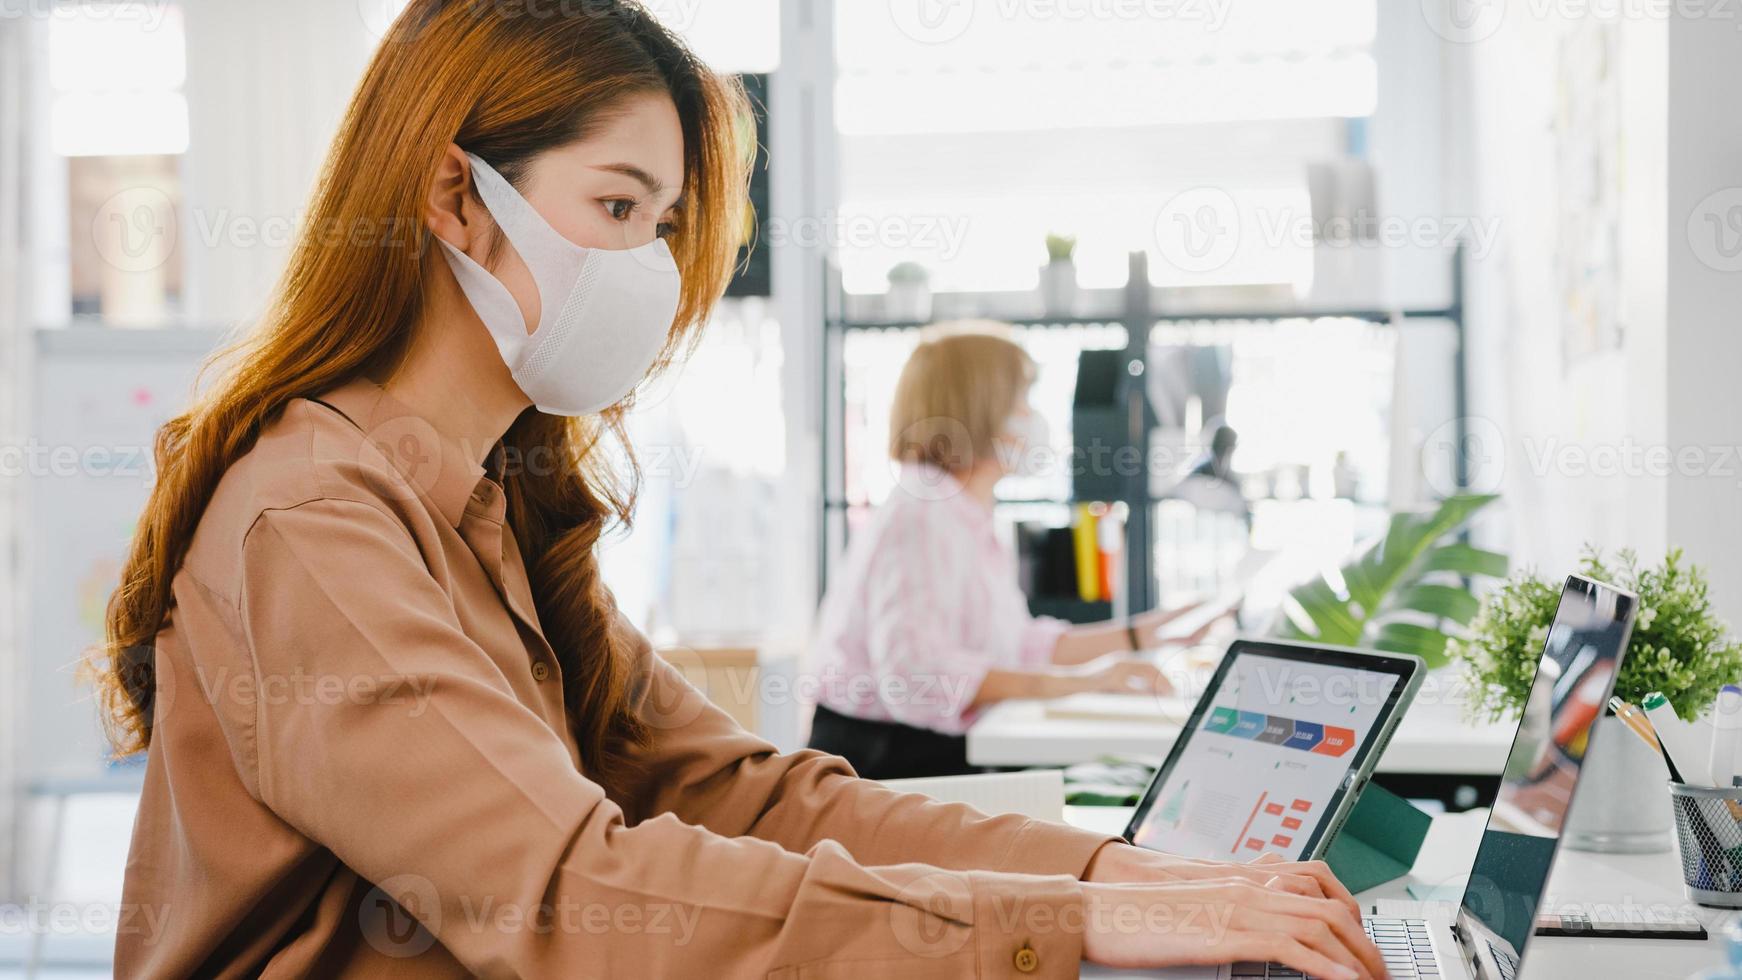 azië zakenvrouw ondernemer met medisch gezichtsmasker voor sociale afstand in nieuwe normale situatie voor viruspreventie tijdens het gebruik van laptop terug op het werk op kantoor. levensstijl na het coronavirus. foto